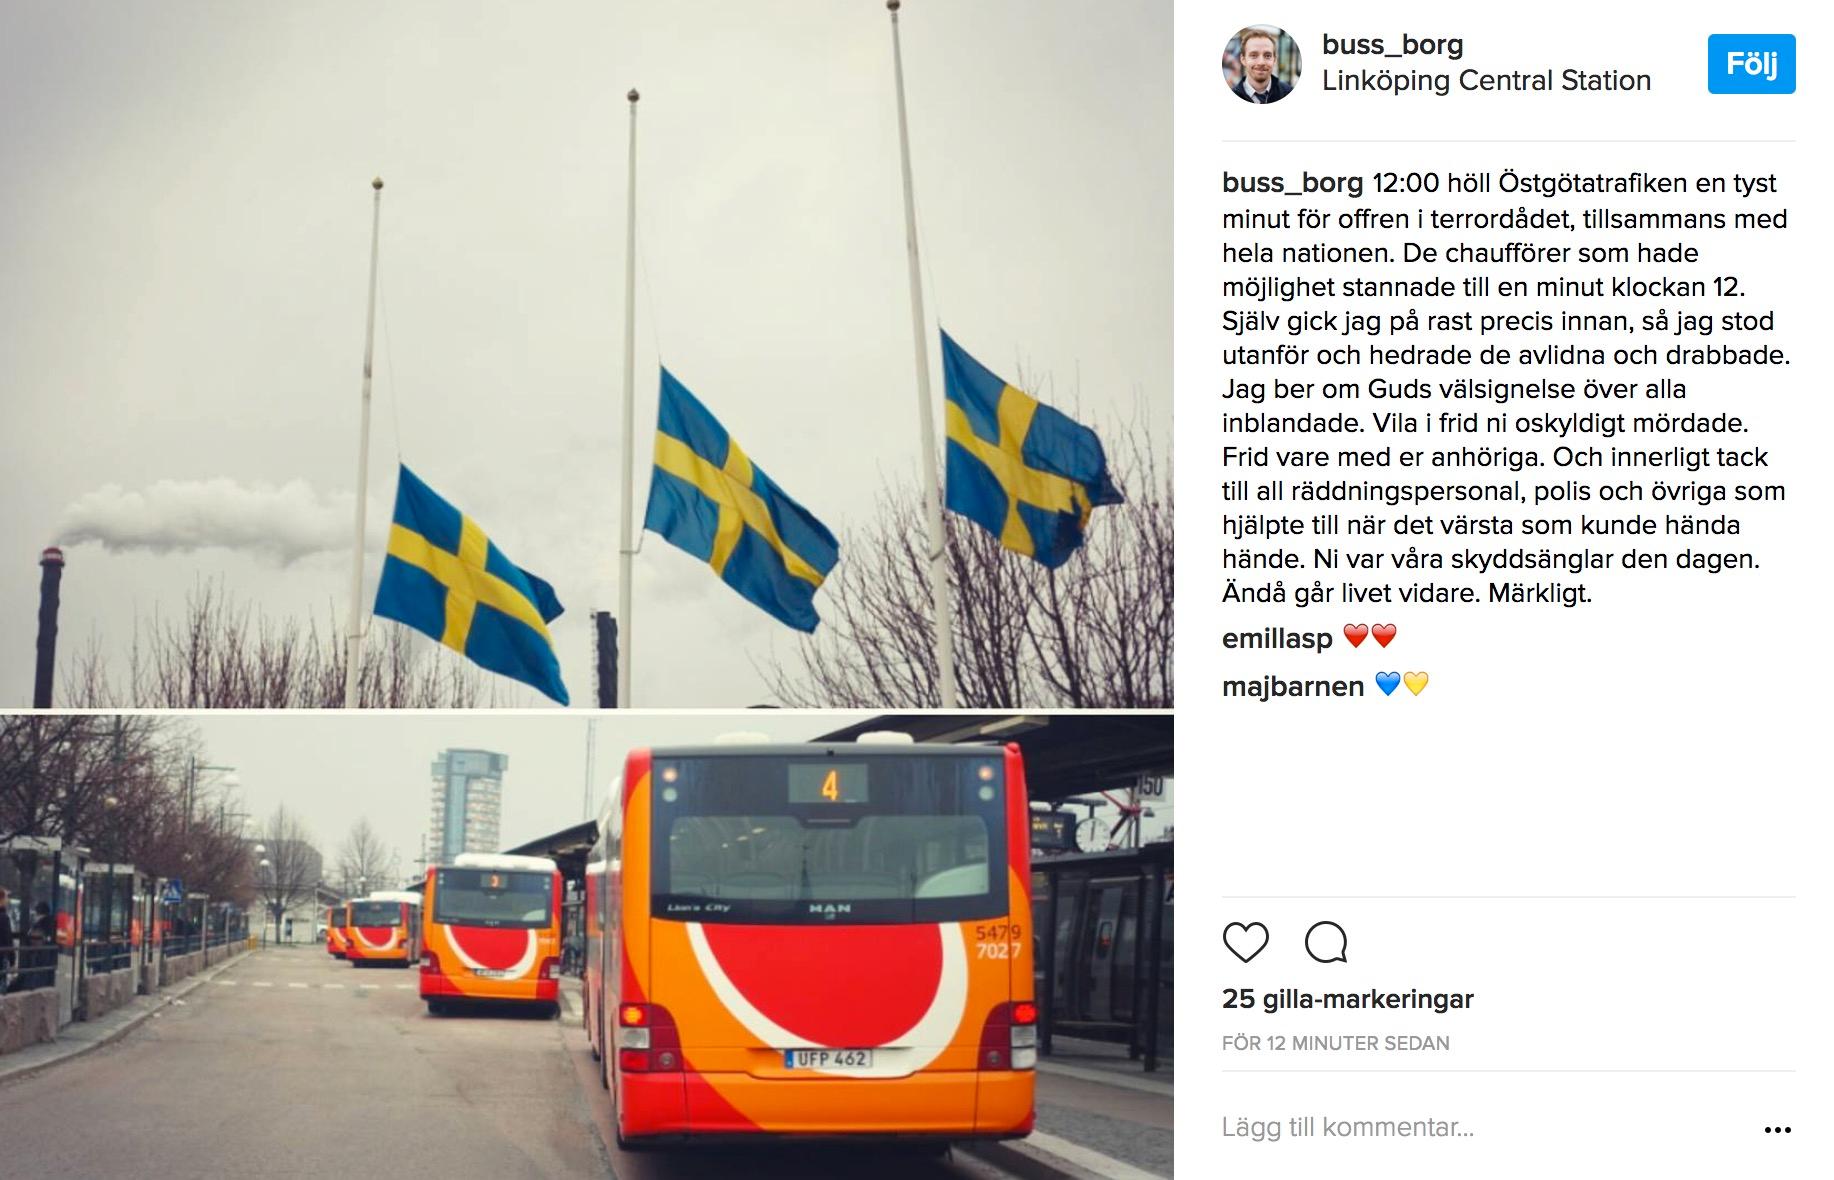 Busschaufförer i Östergötland hedrade offren med en tyst minut.